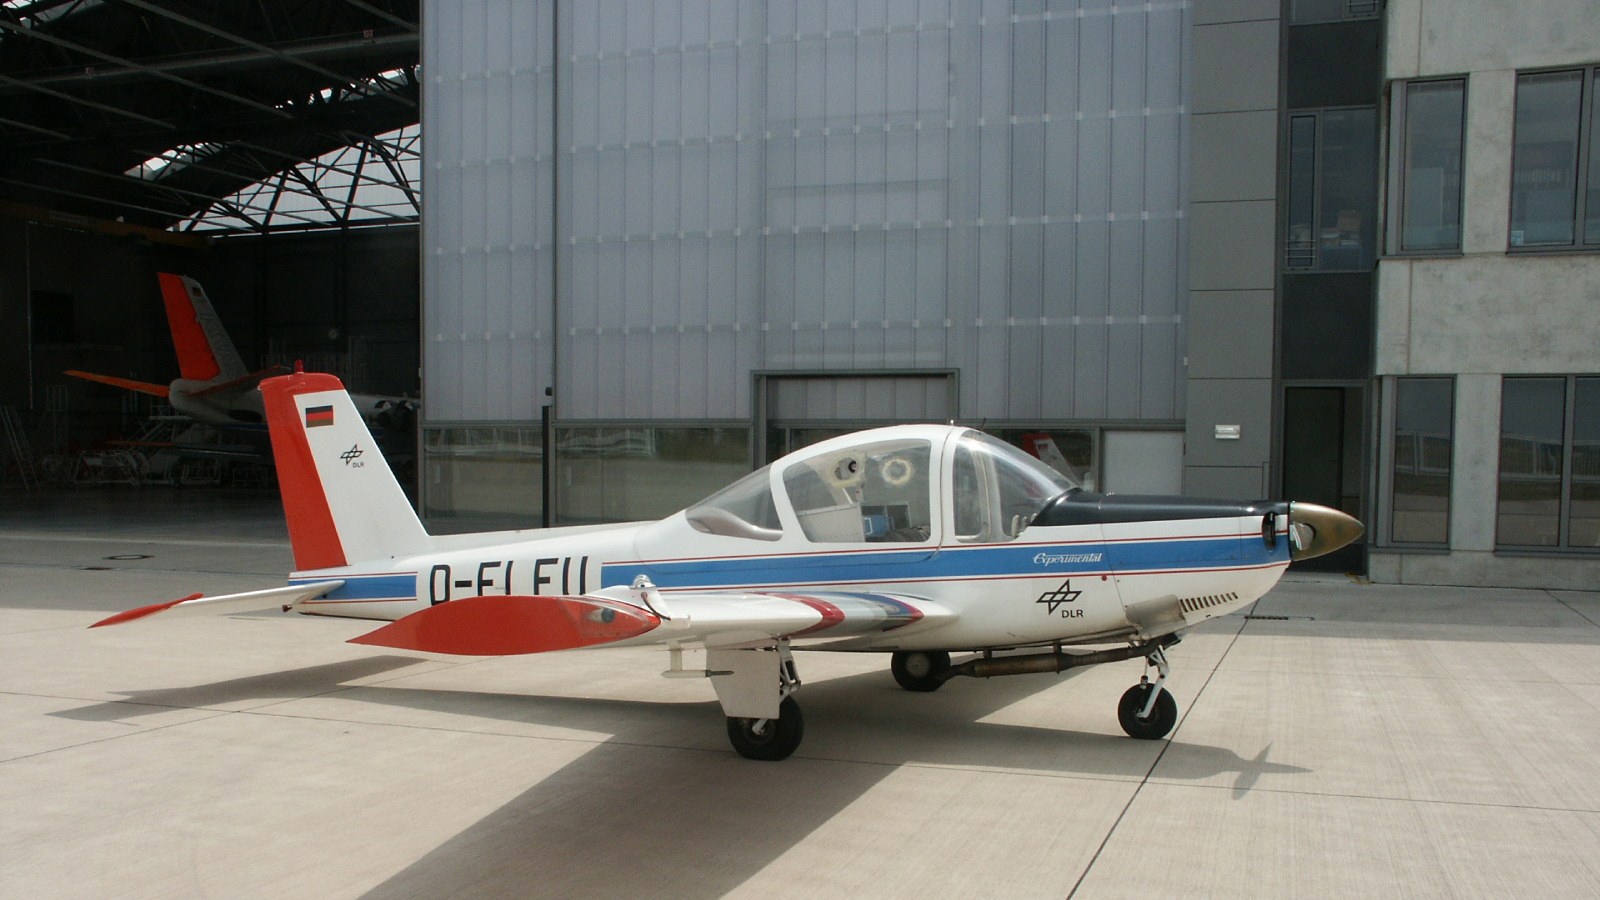 DLR-Forschungsflugzeug LFU 205